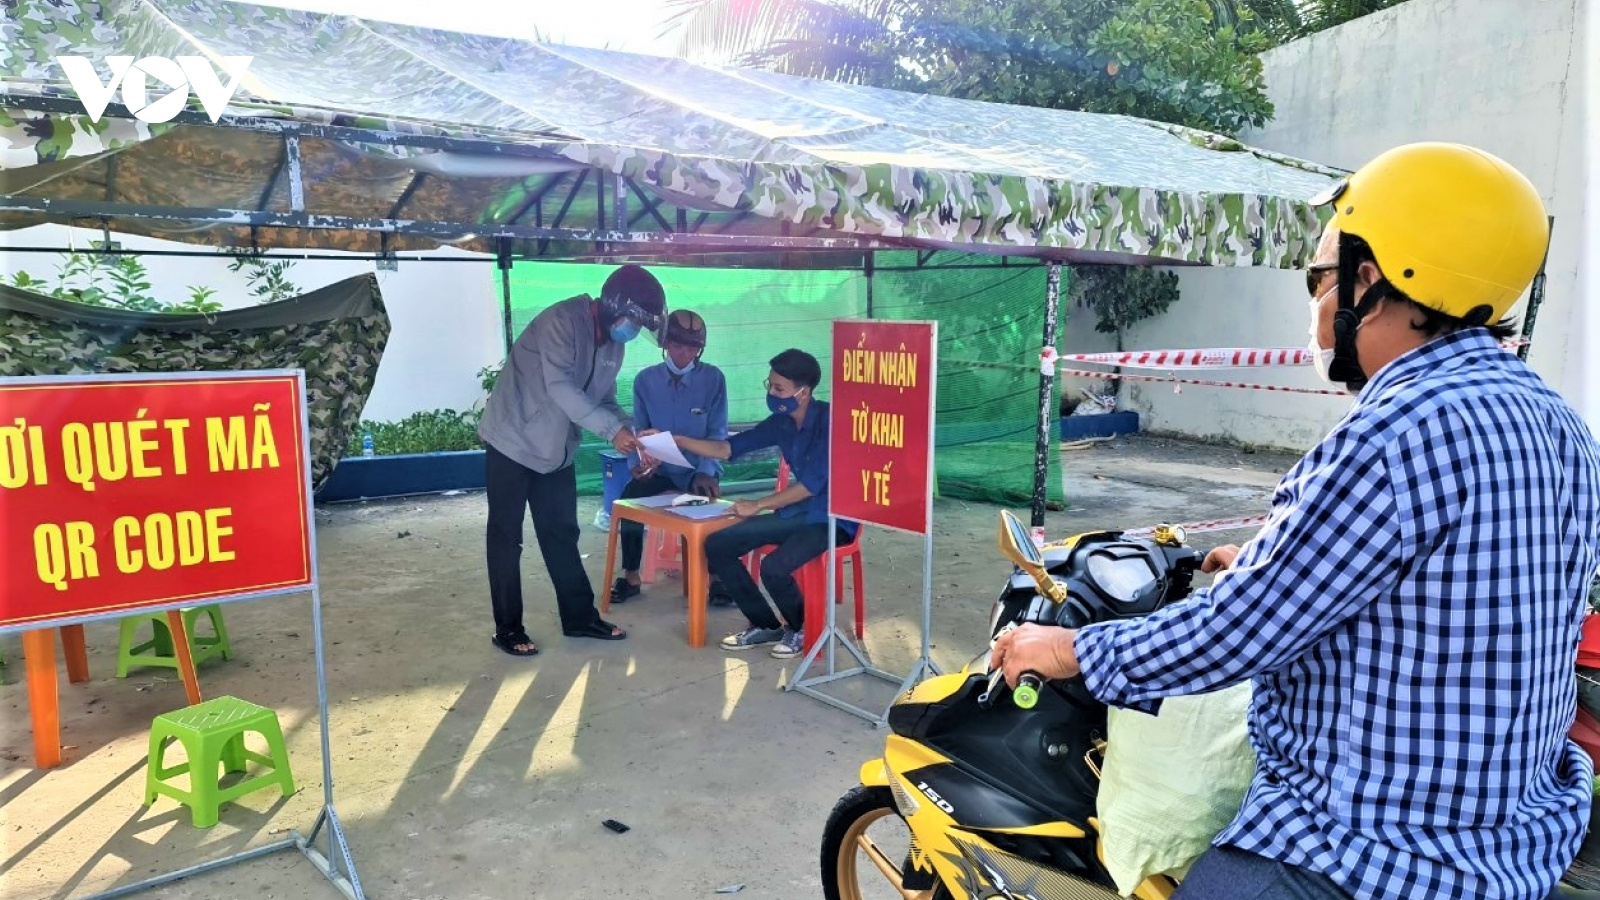 Tiền Giang, Vĩnh Long, Cà Mau quyết liệt triển khai các biện pháp phòng chống dịch bệnh  